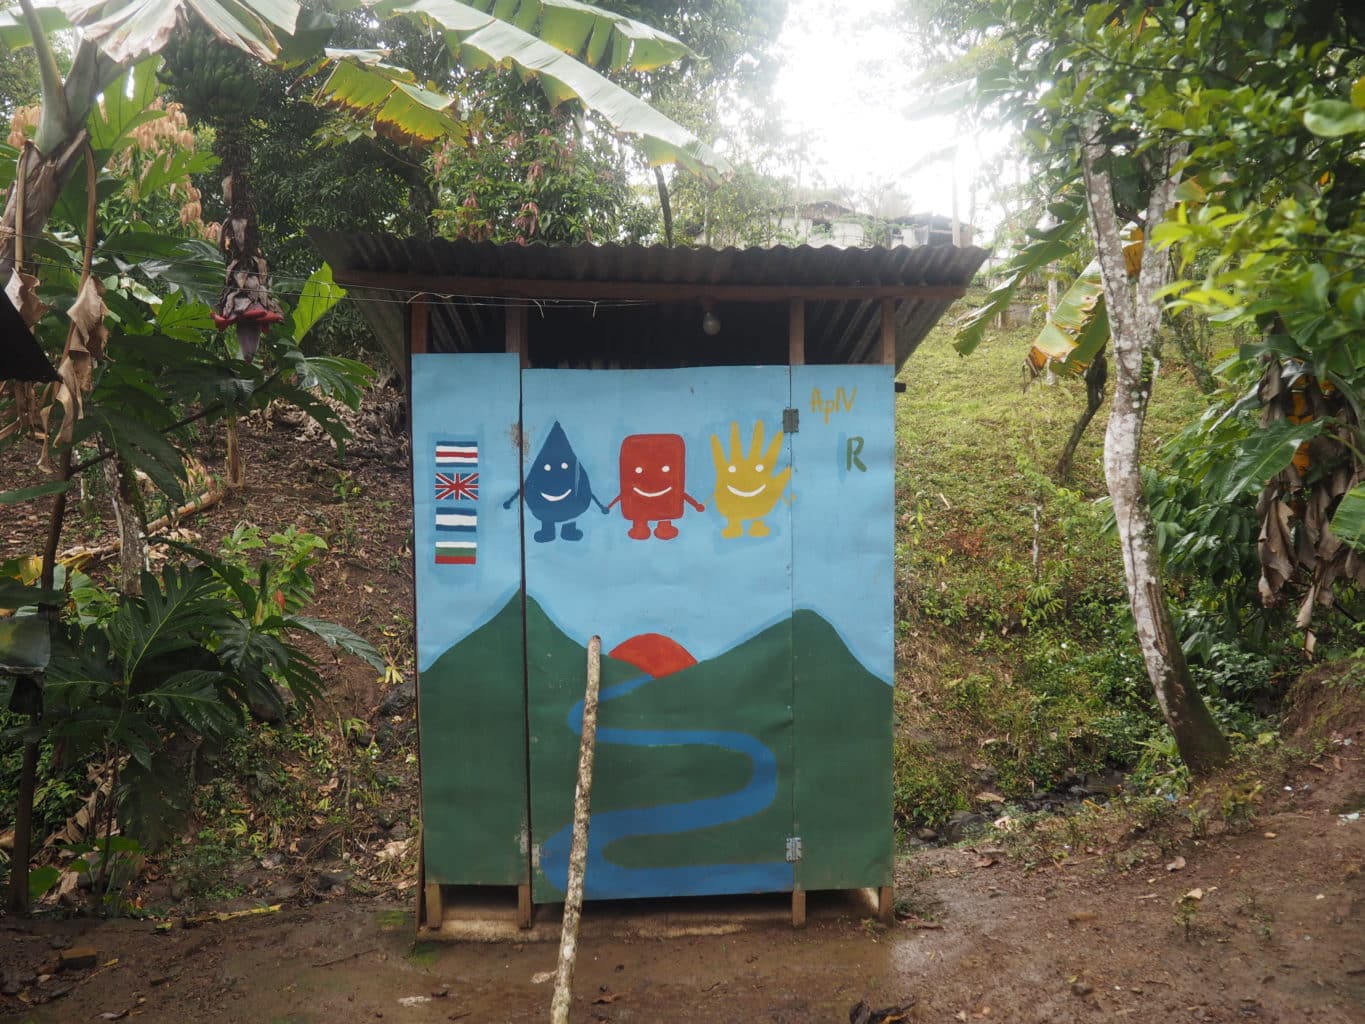 Compost latrine in community.